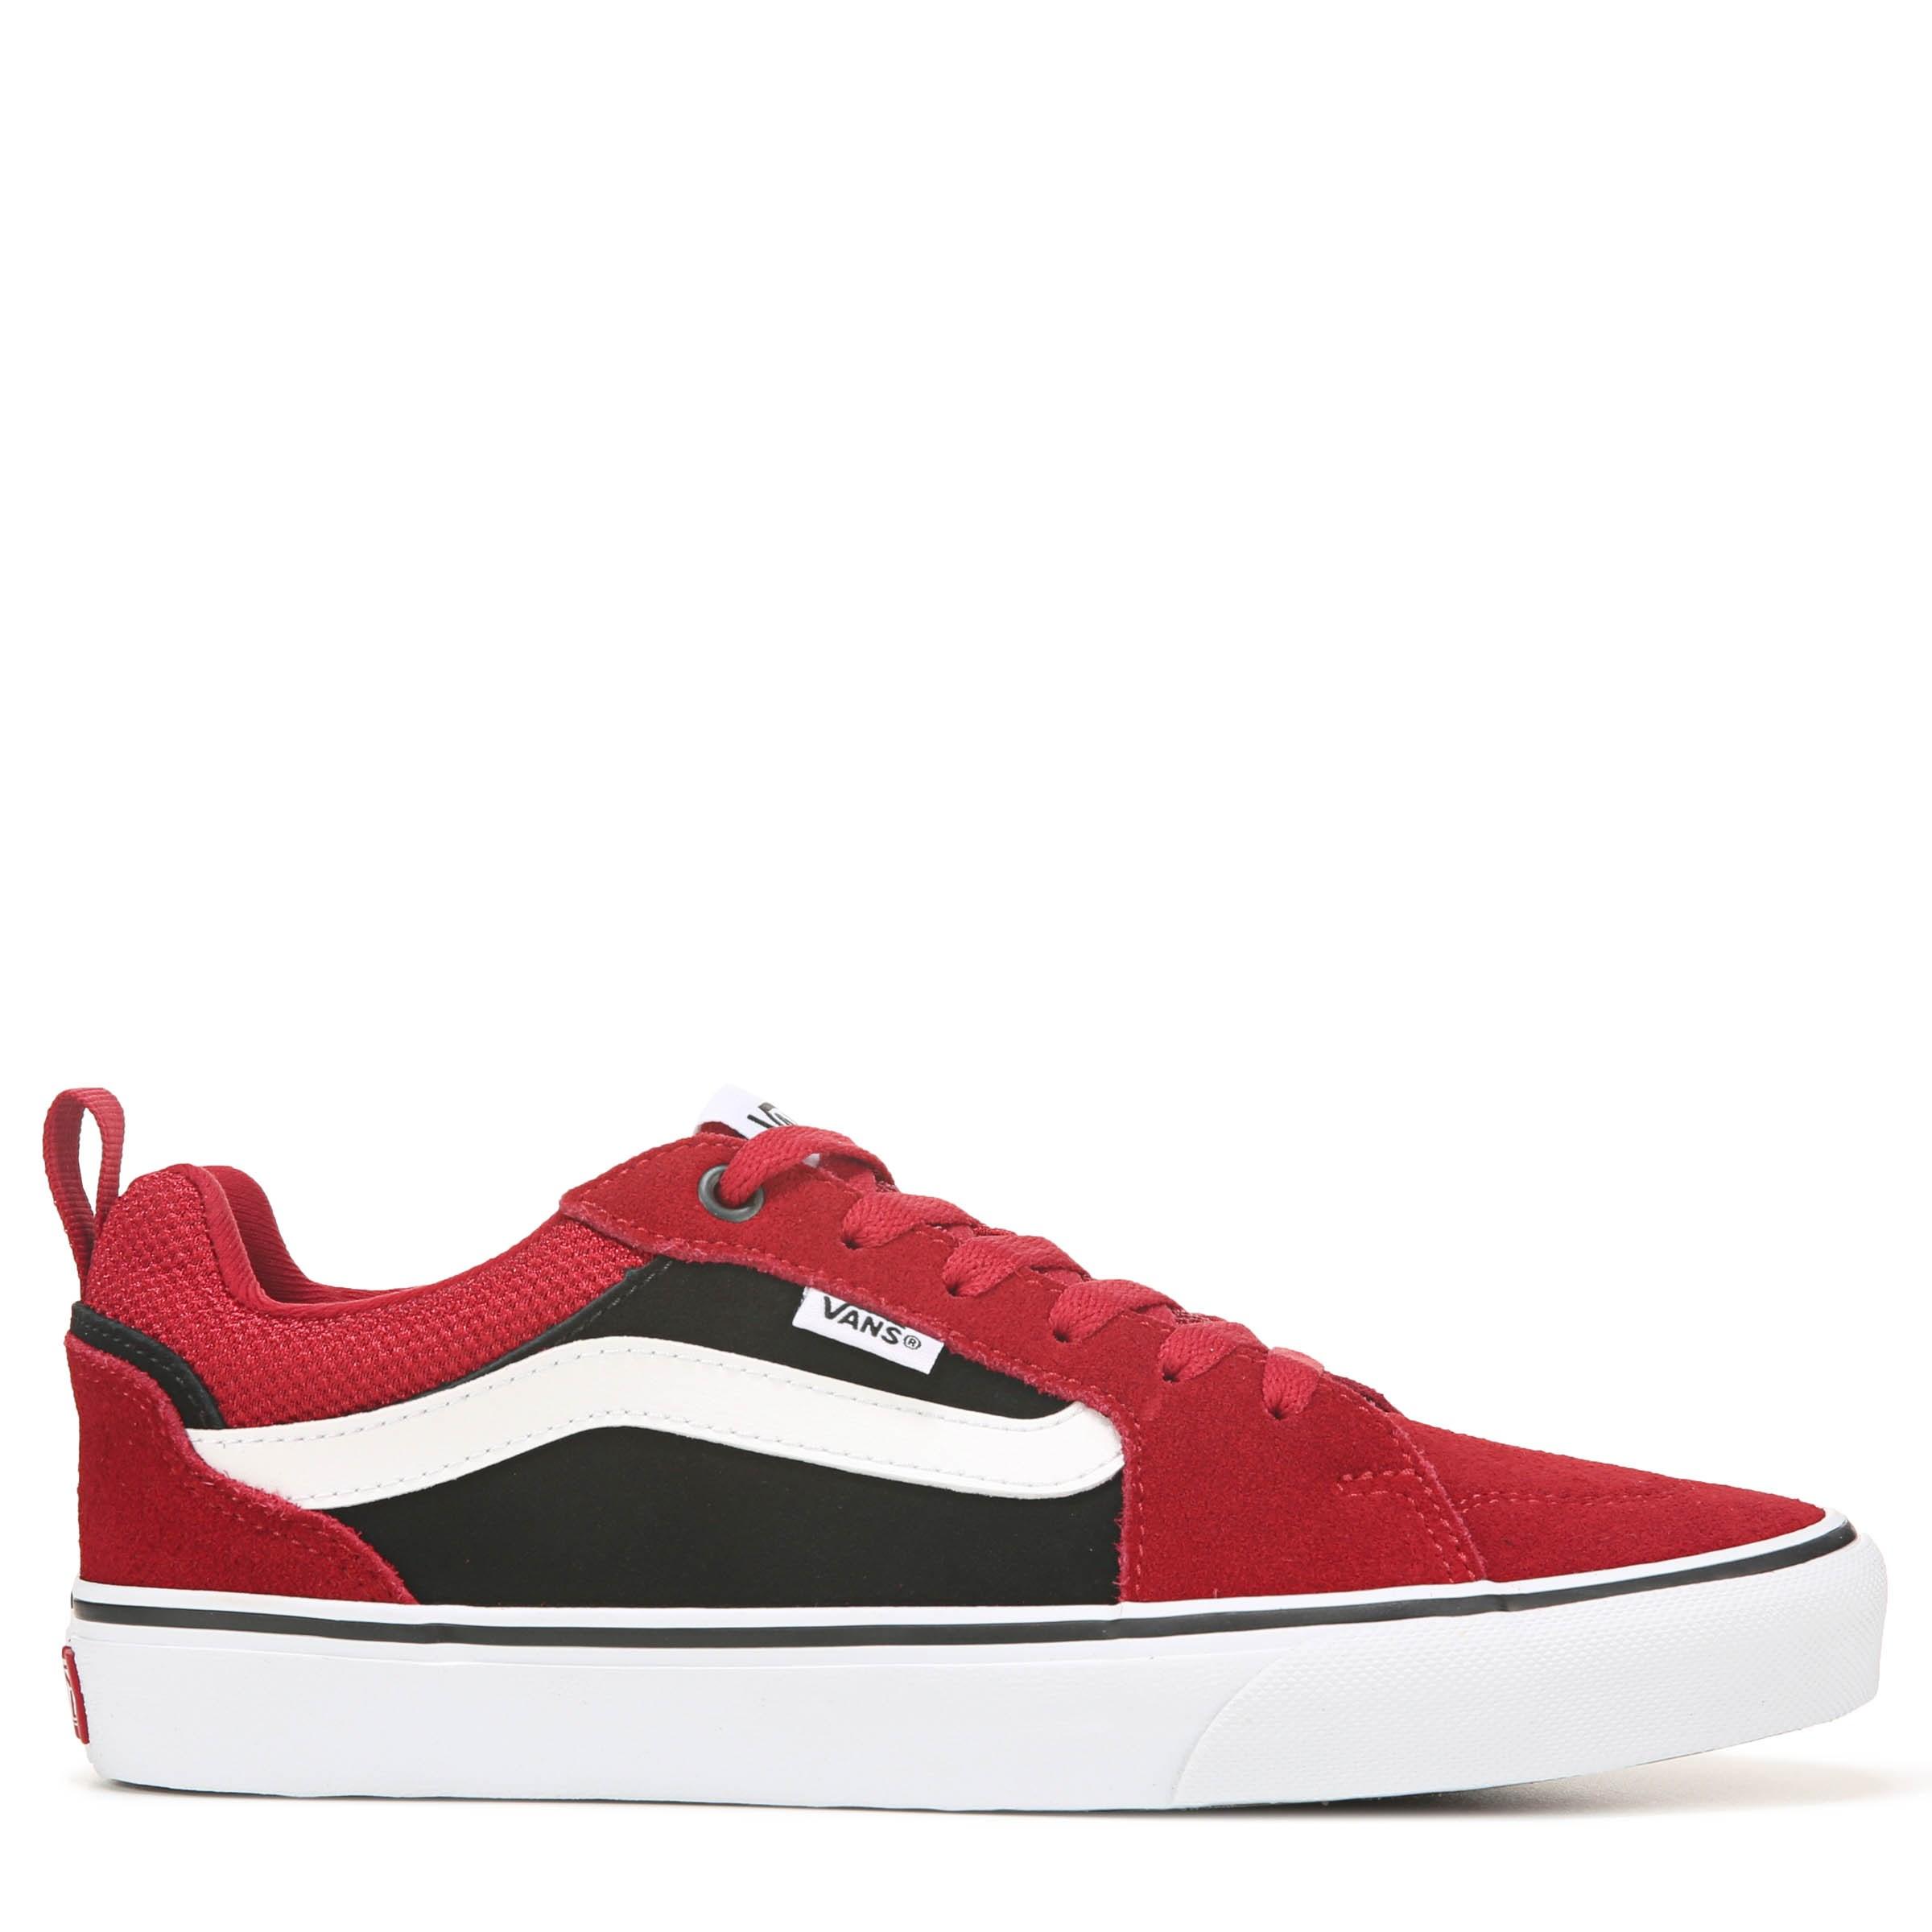 Vans Suede Filmore Skate Shoes in Red 